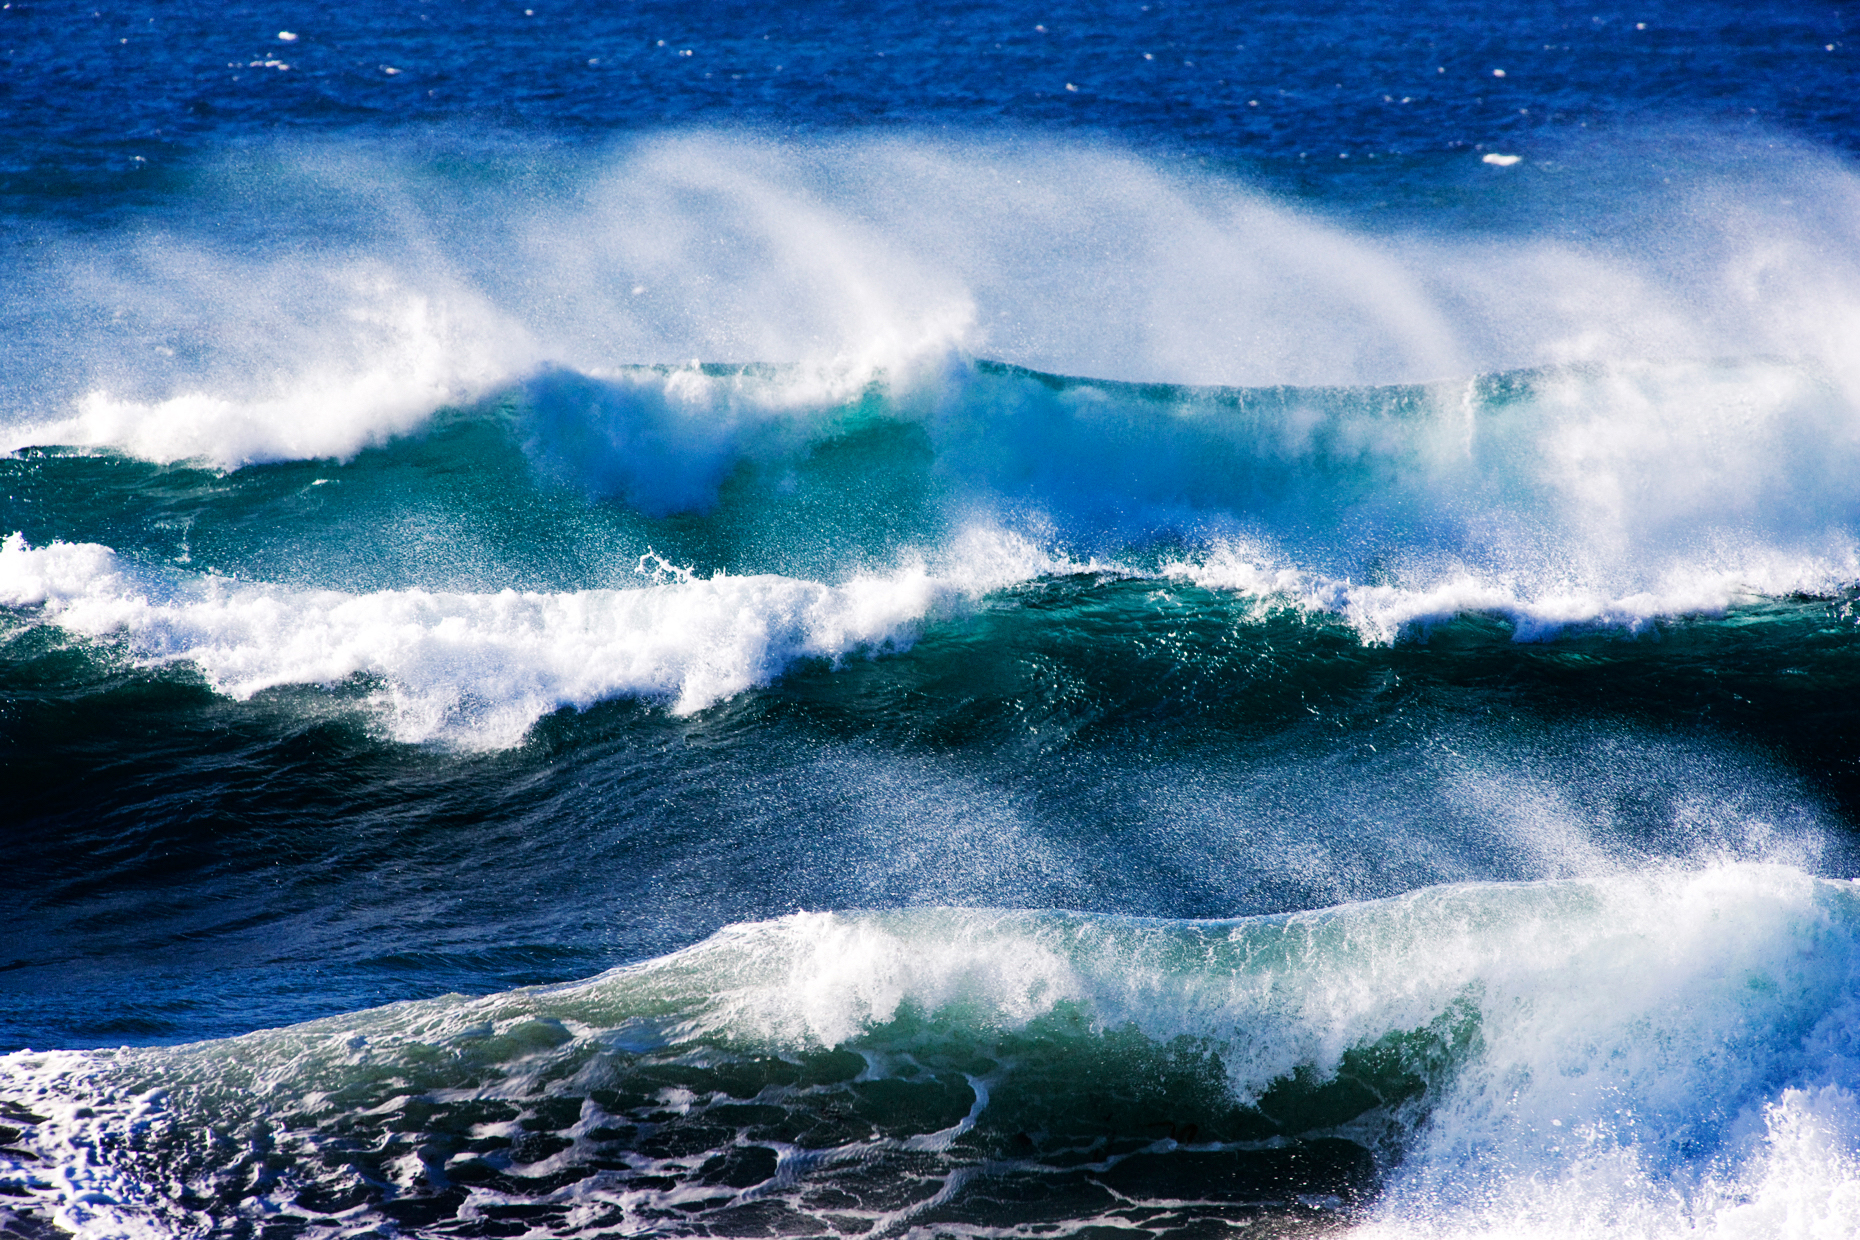 Pacific Ocean waves crashing ashore near seal Rock Picnic Area, Pebble Beach, Monterey Peninsula, California, USA